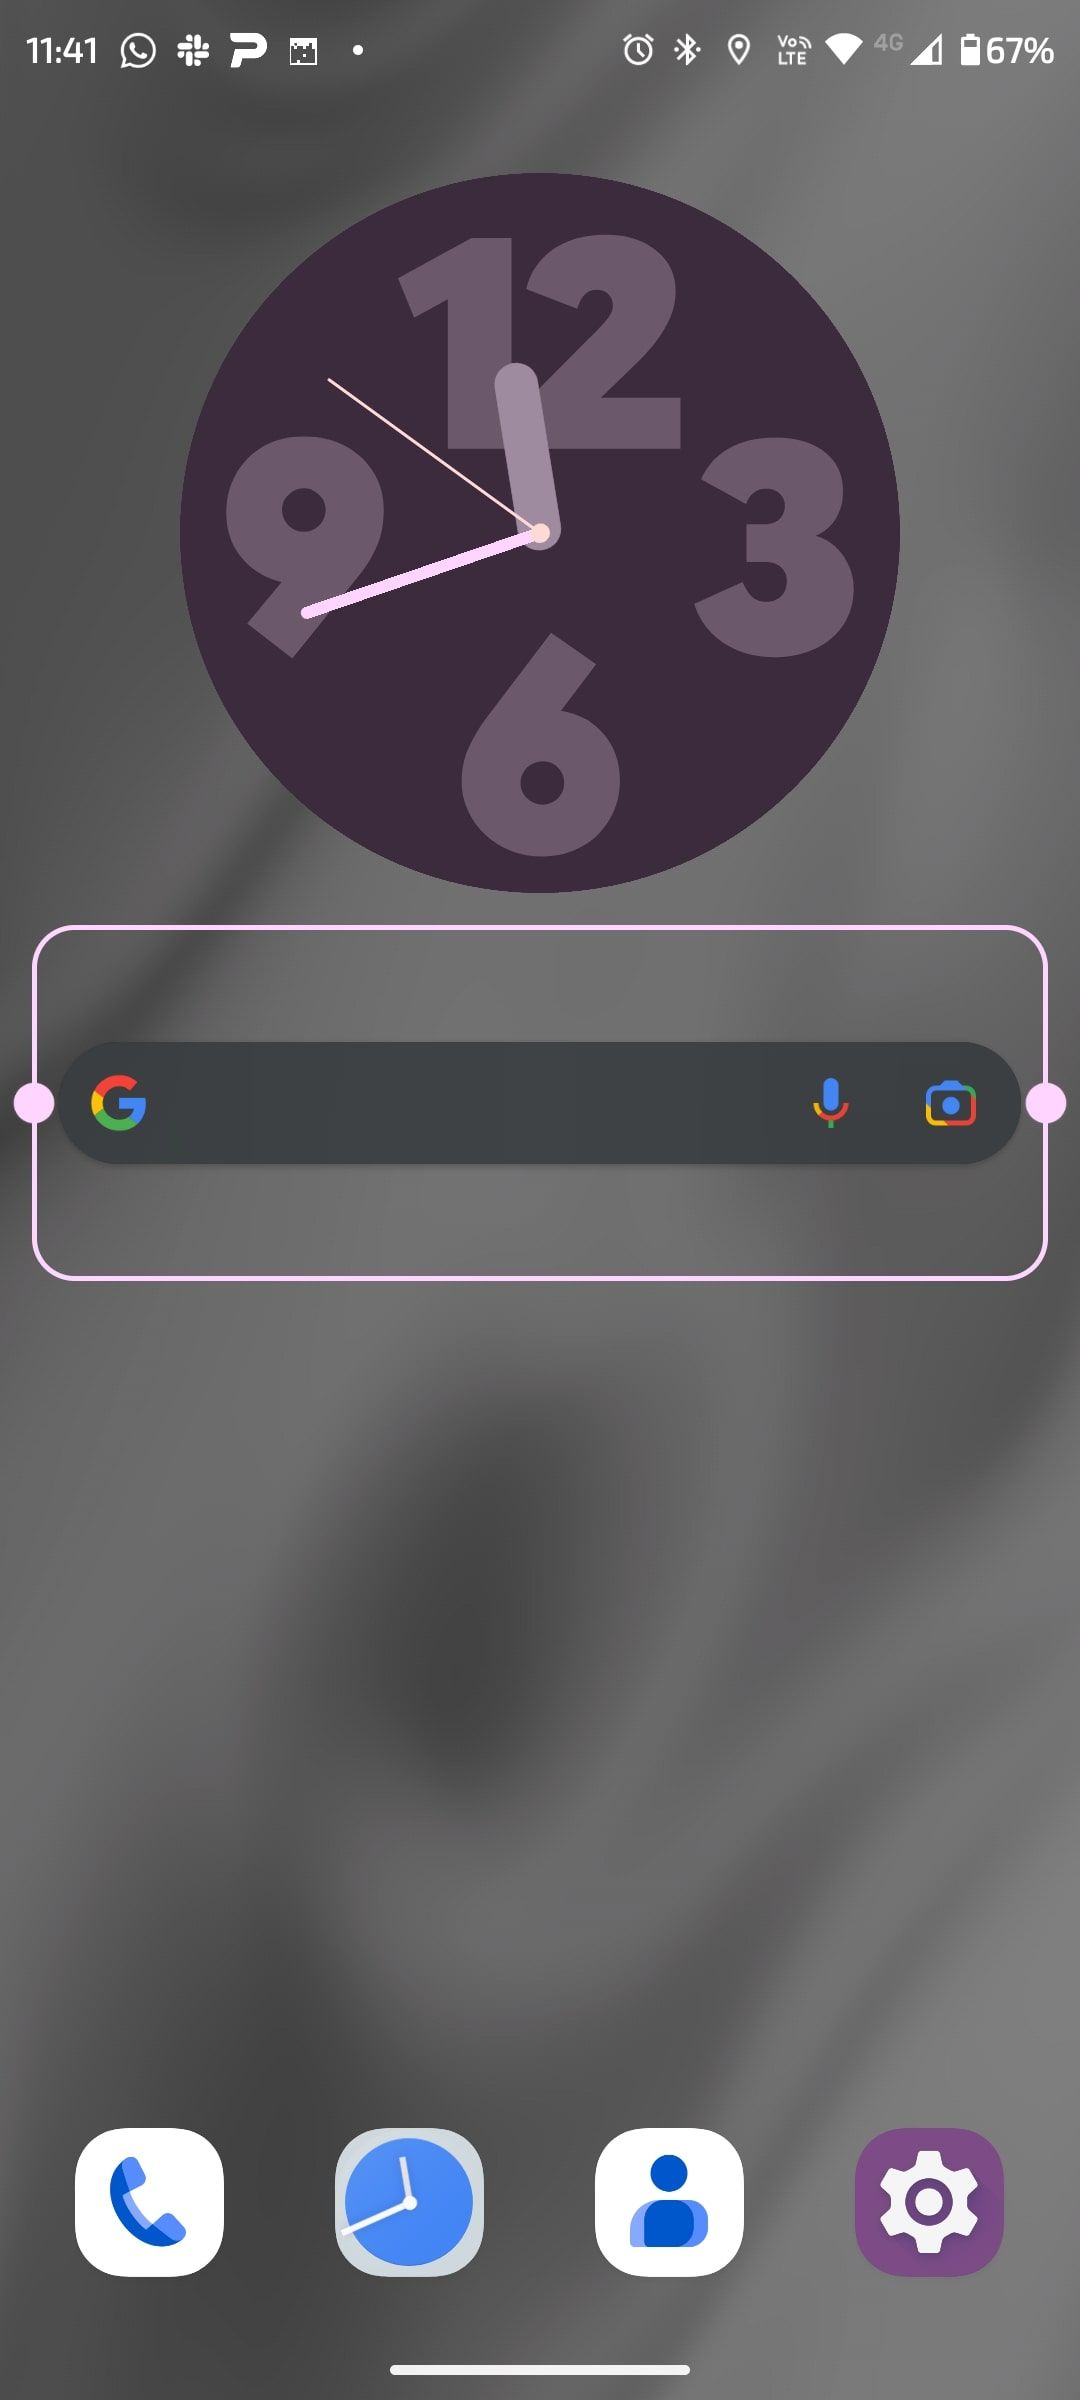 Écran d'accueil Android avec widget Google entouré